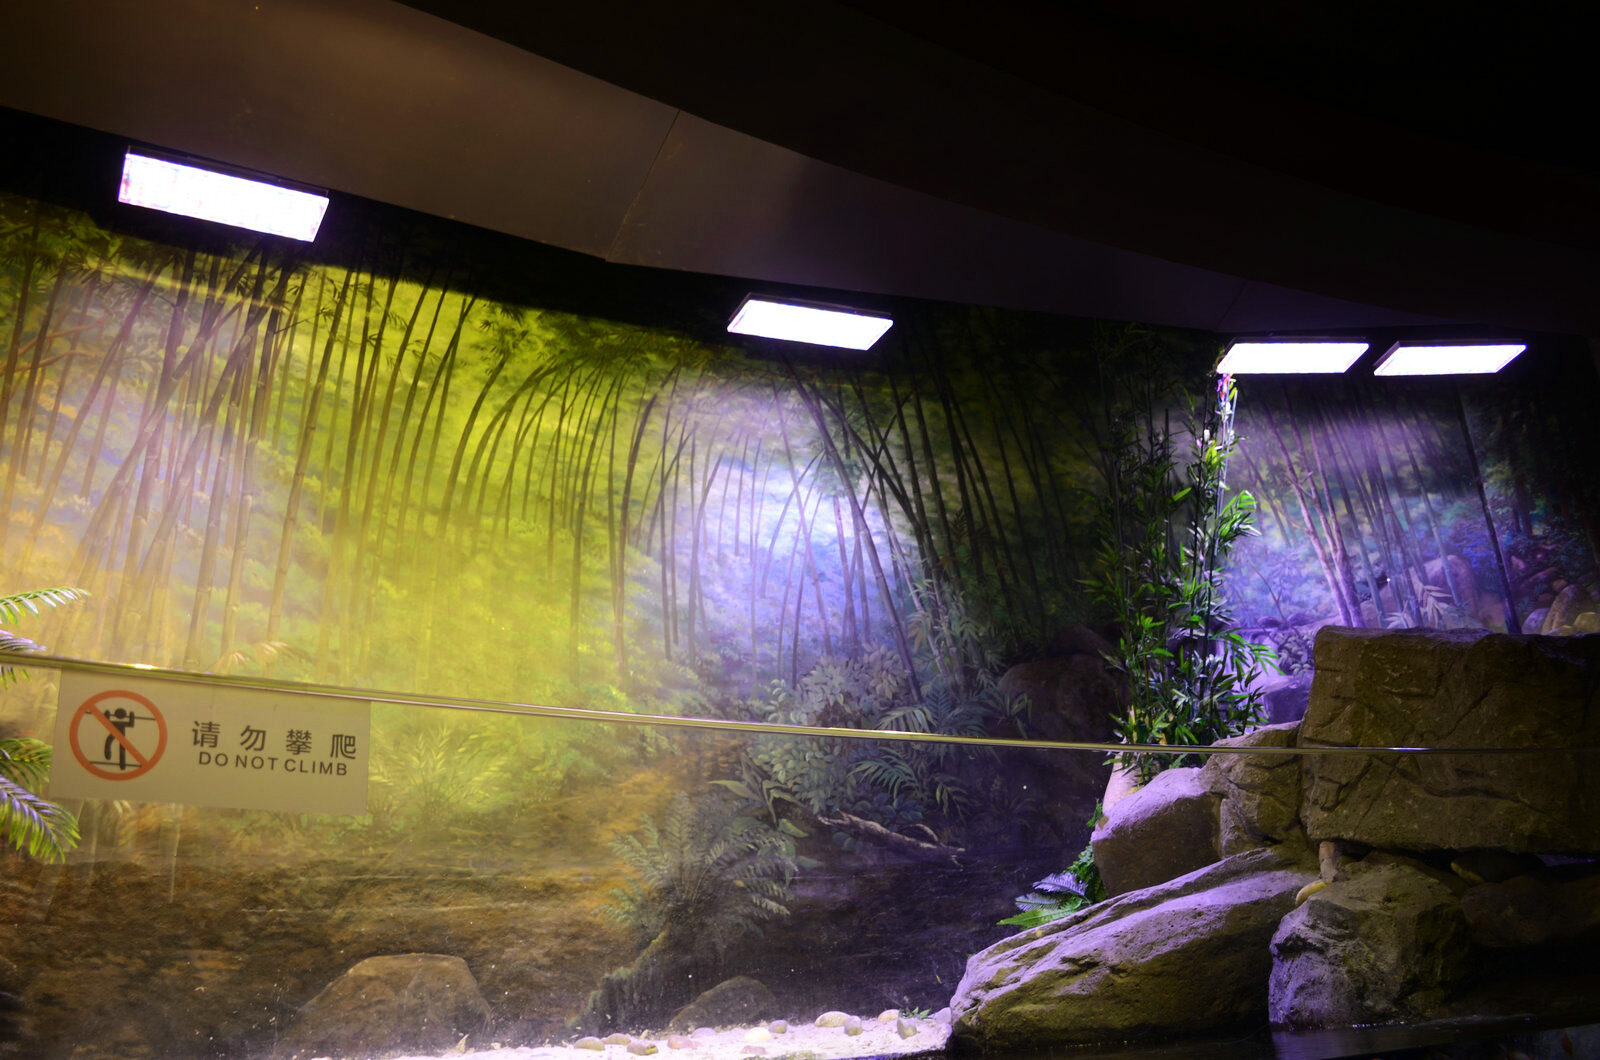 acquario pubblico d'acqua dolce piantato con luce a led orphek